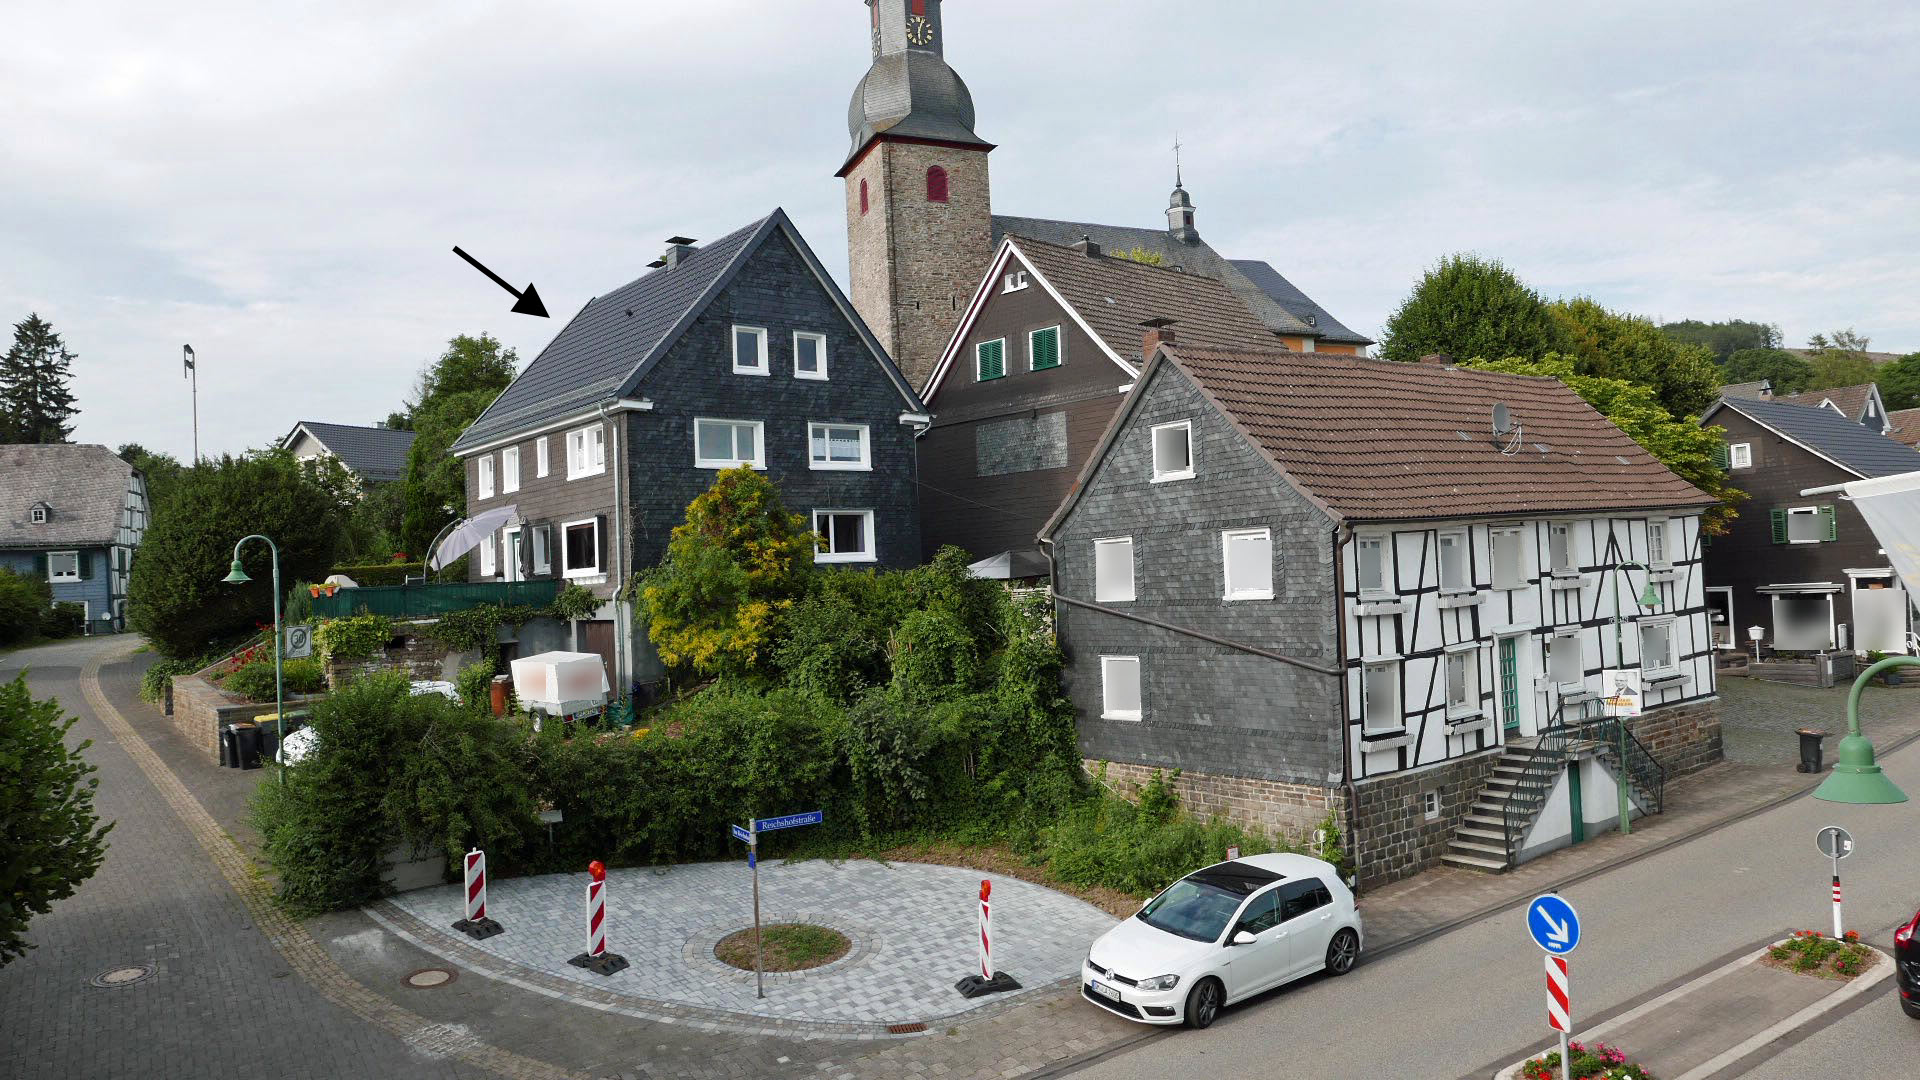 Eckenhagen: Gutbürgerliches, gemütliches Fachwerkhaus mit Garten, Panorama-Ansicht heute 